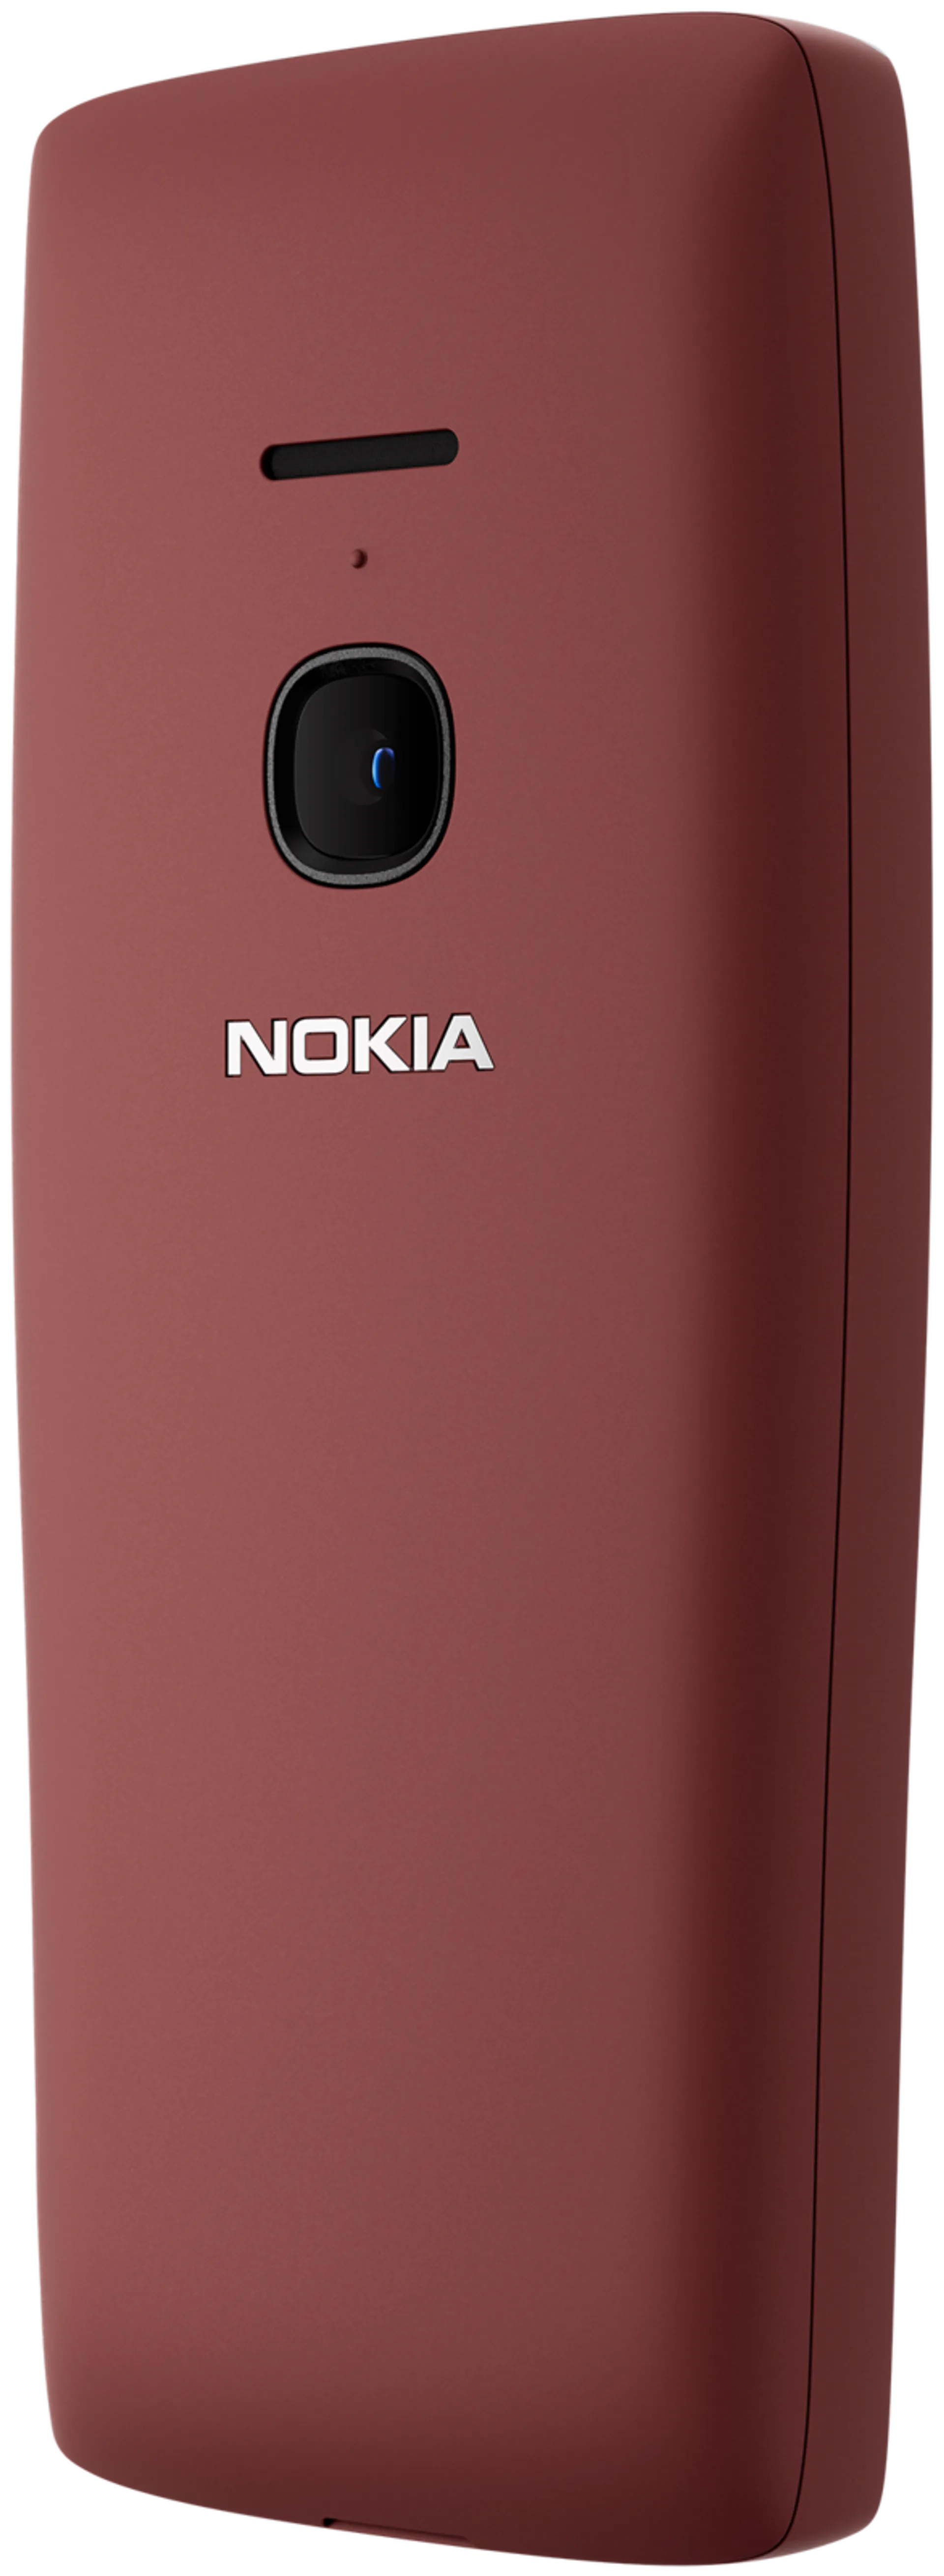 Nokia 8210 4G punainen peruspuhelin - 3